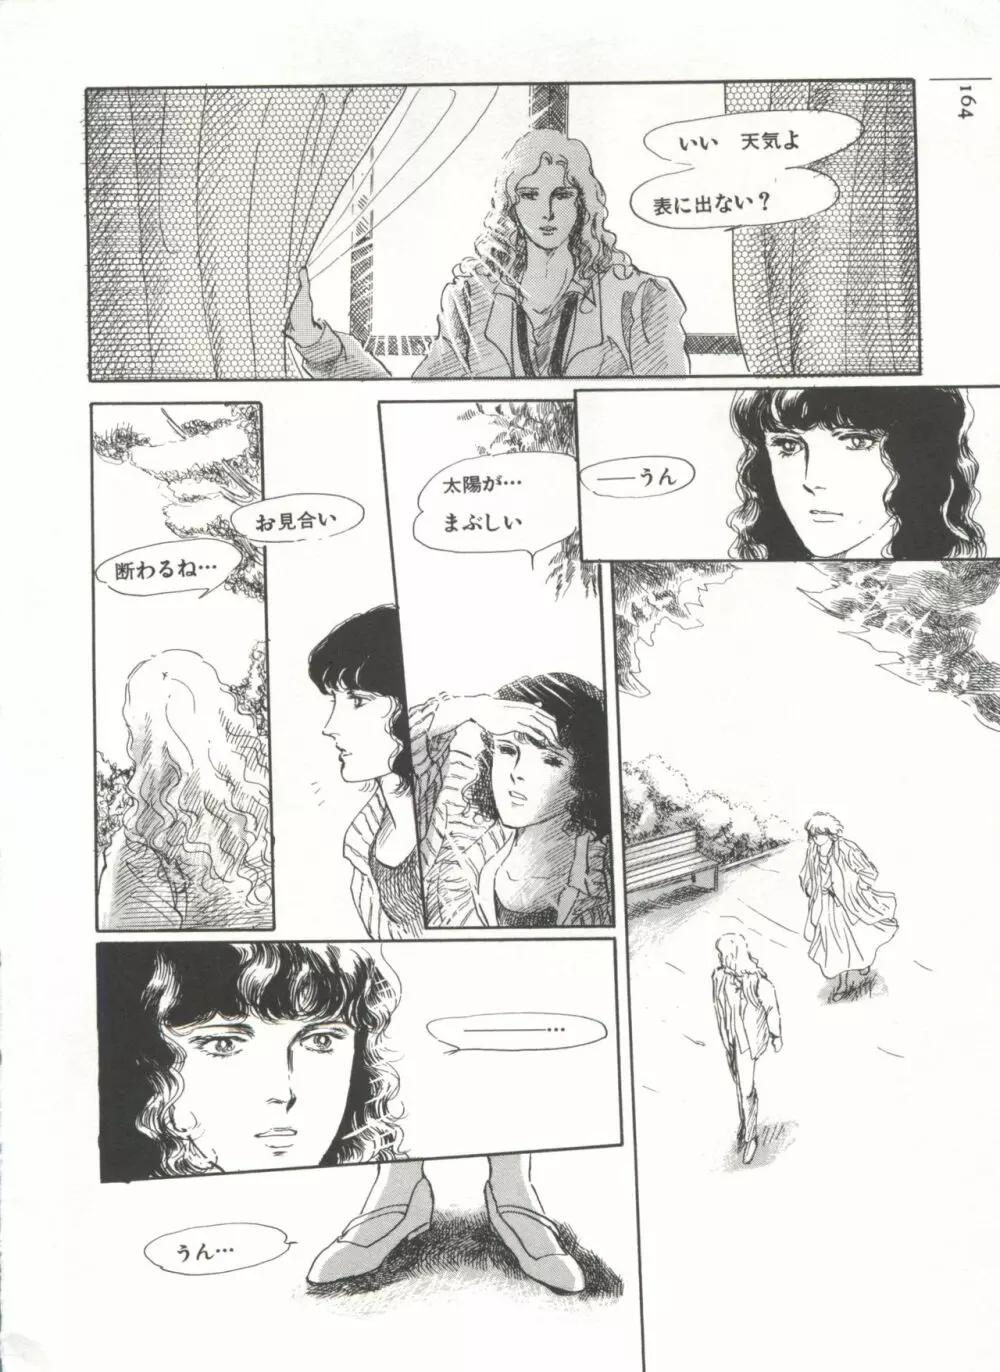 [Anthology] 美少女症候群(2) Lolita syndrome (よろず) 167ページ